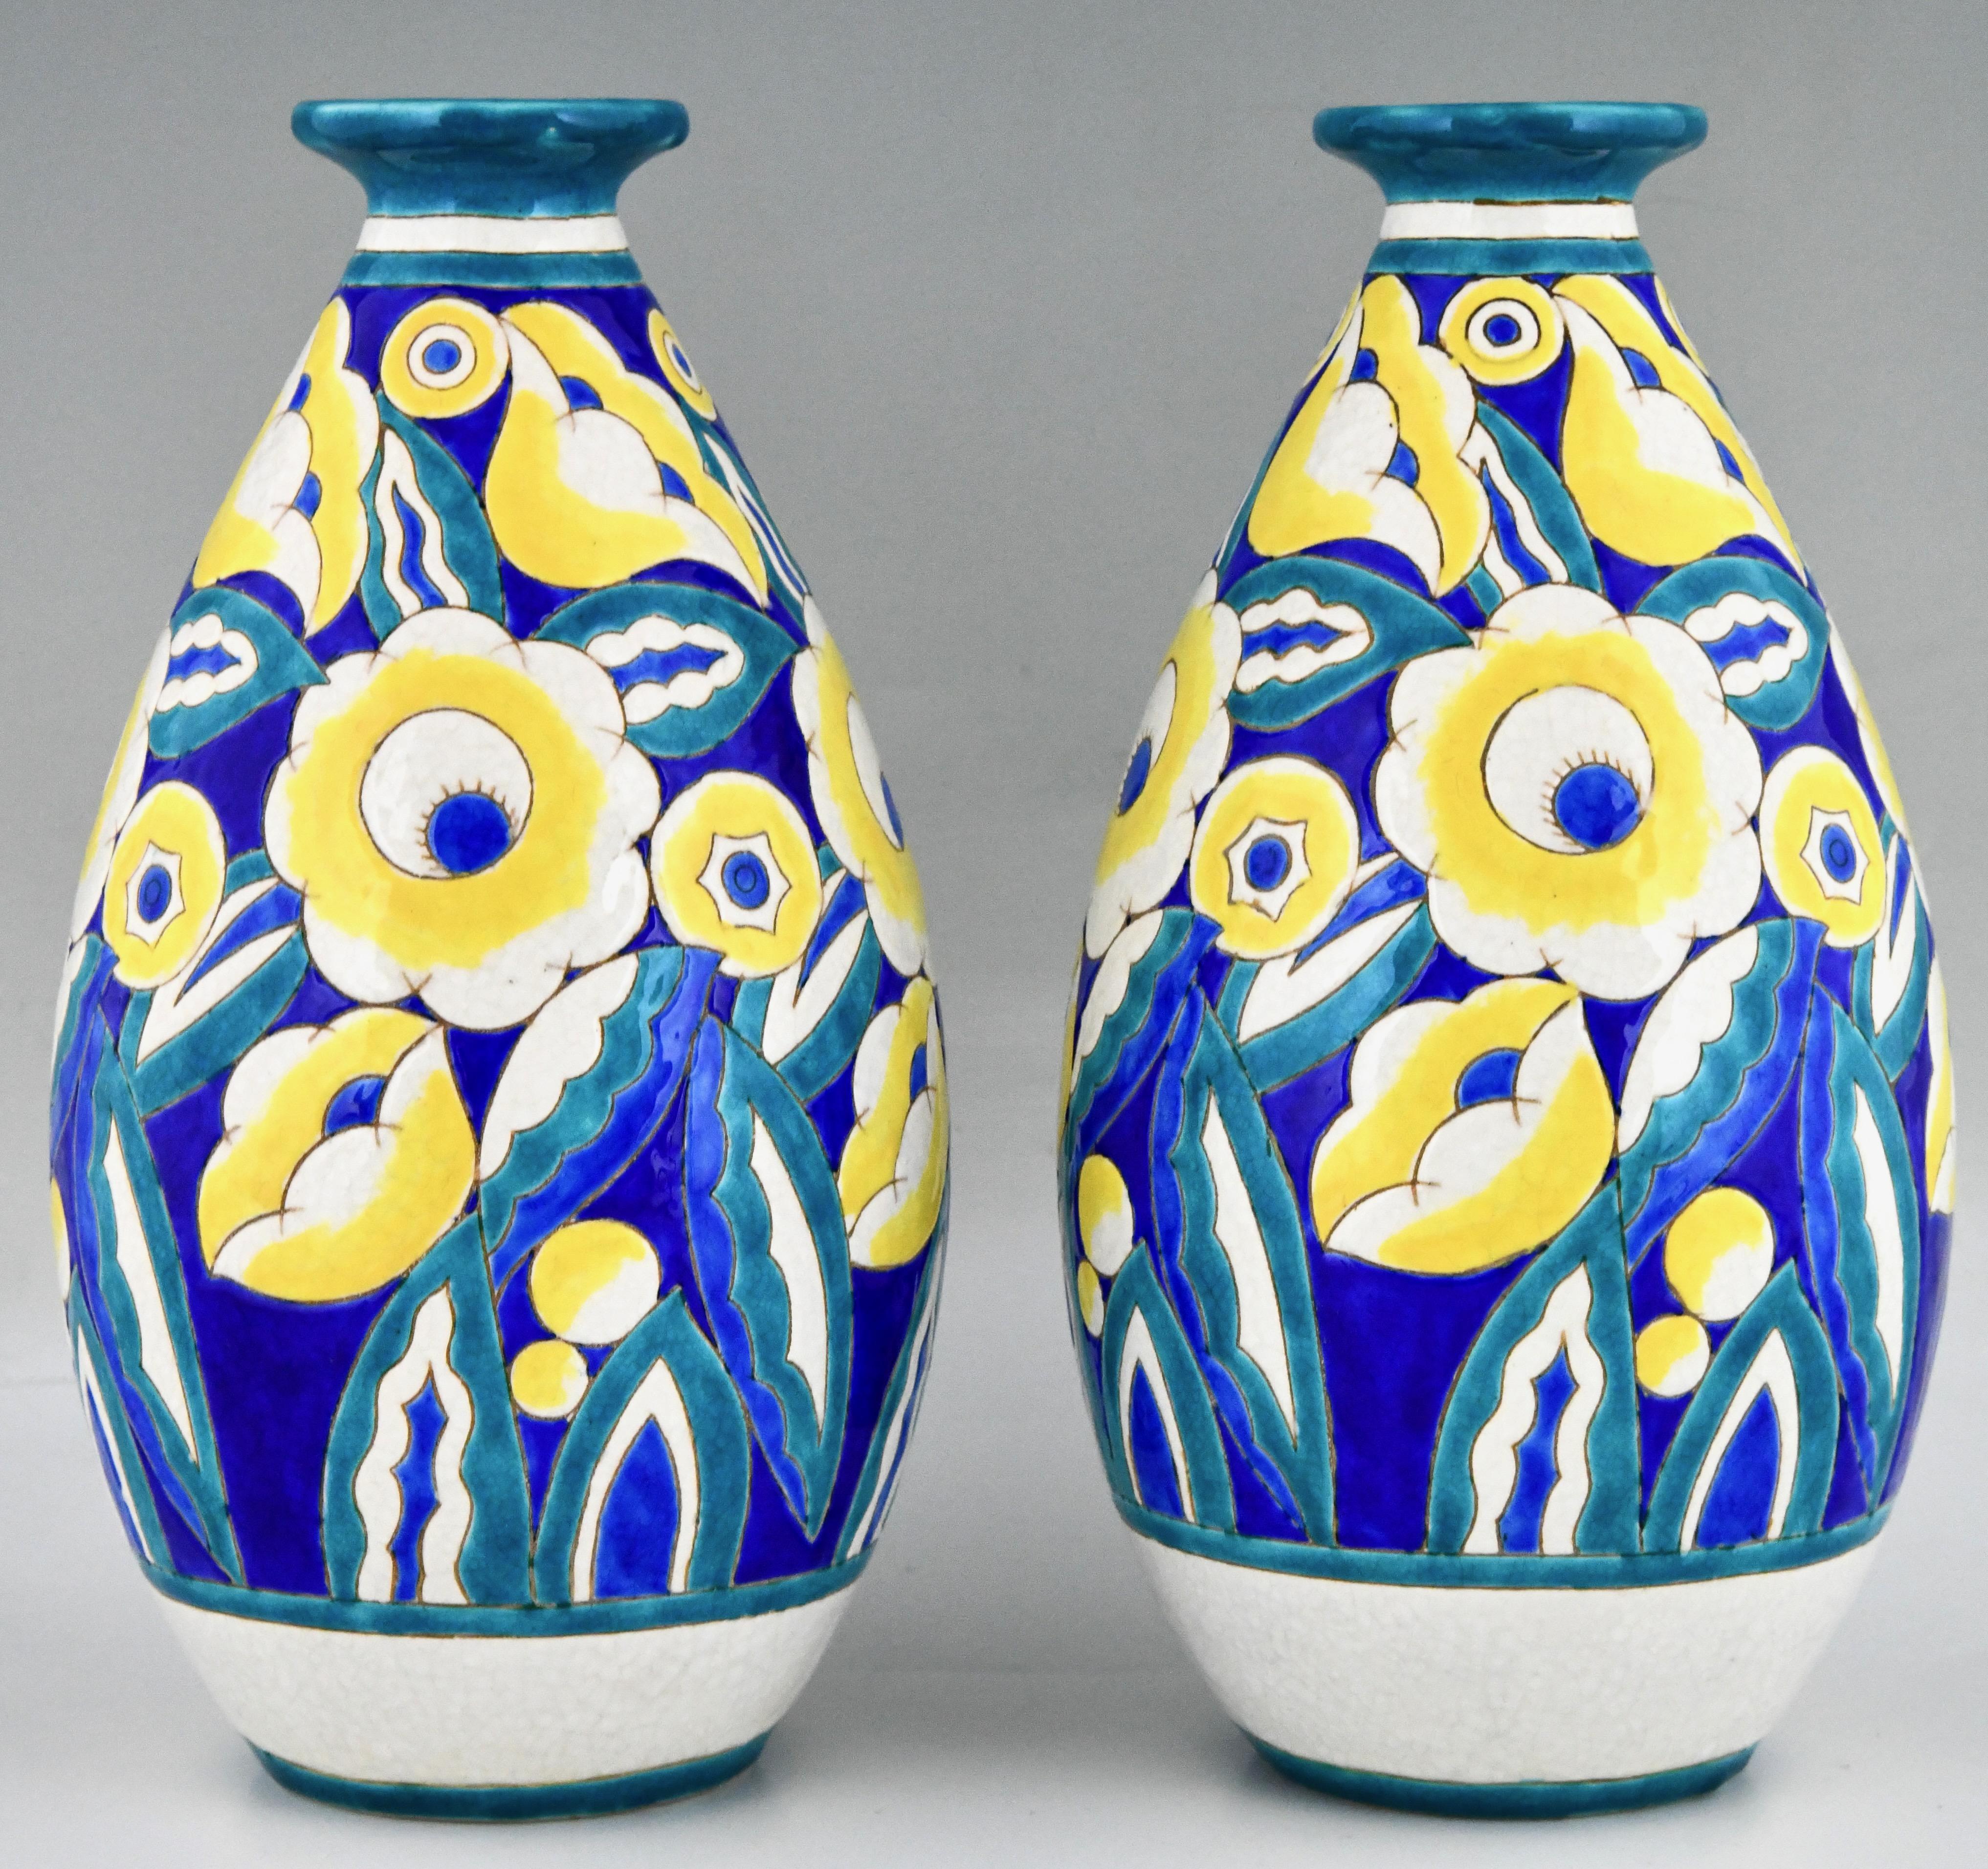 Paire de vases en céramique Art déco avec des fleurs par Keramis, Belgique.
Céramique craquelée turquoise, bleue, blanche et jaune. 
Avec le cachet de Keramis et le numéro de modèle D1558 pour le décor.
Marqué, 22 et 960 pour la forme. 
Belgique